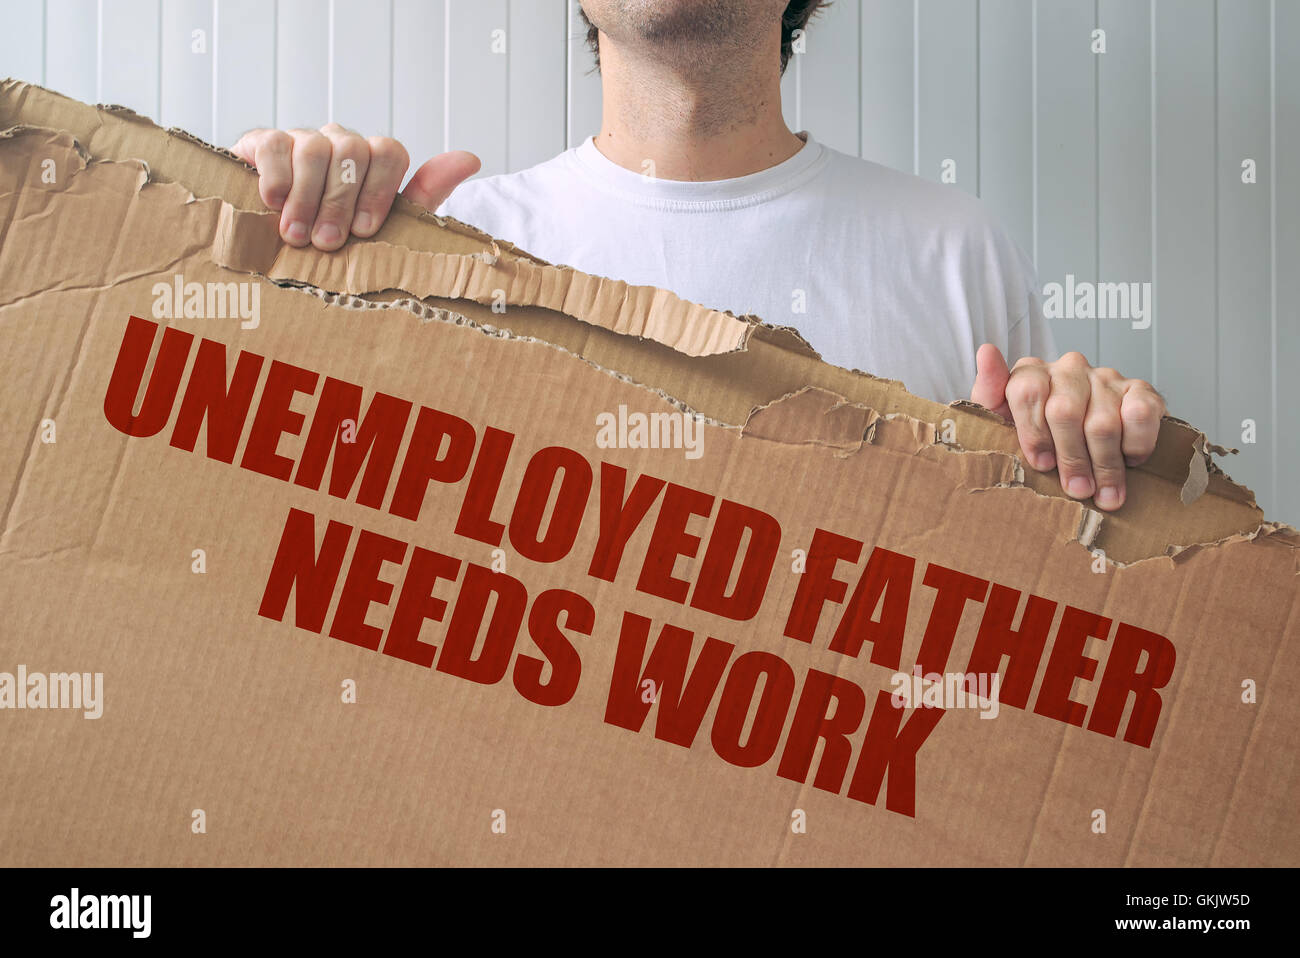 Arbeitsloser Vater braucht Arbeit, Mann, hält Banner mit Arbeitssuche Titel Stockfoto